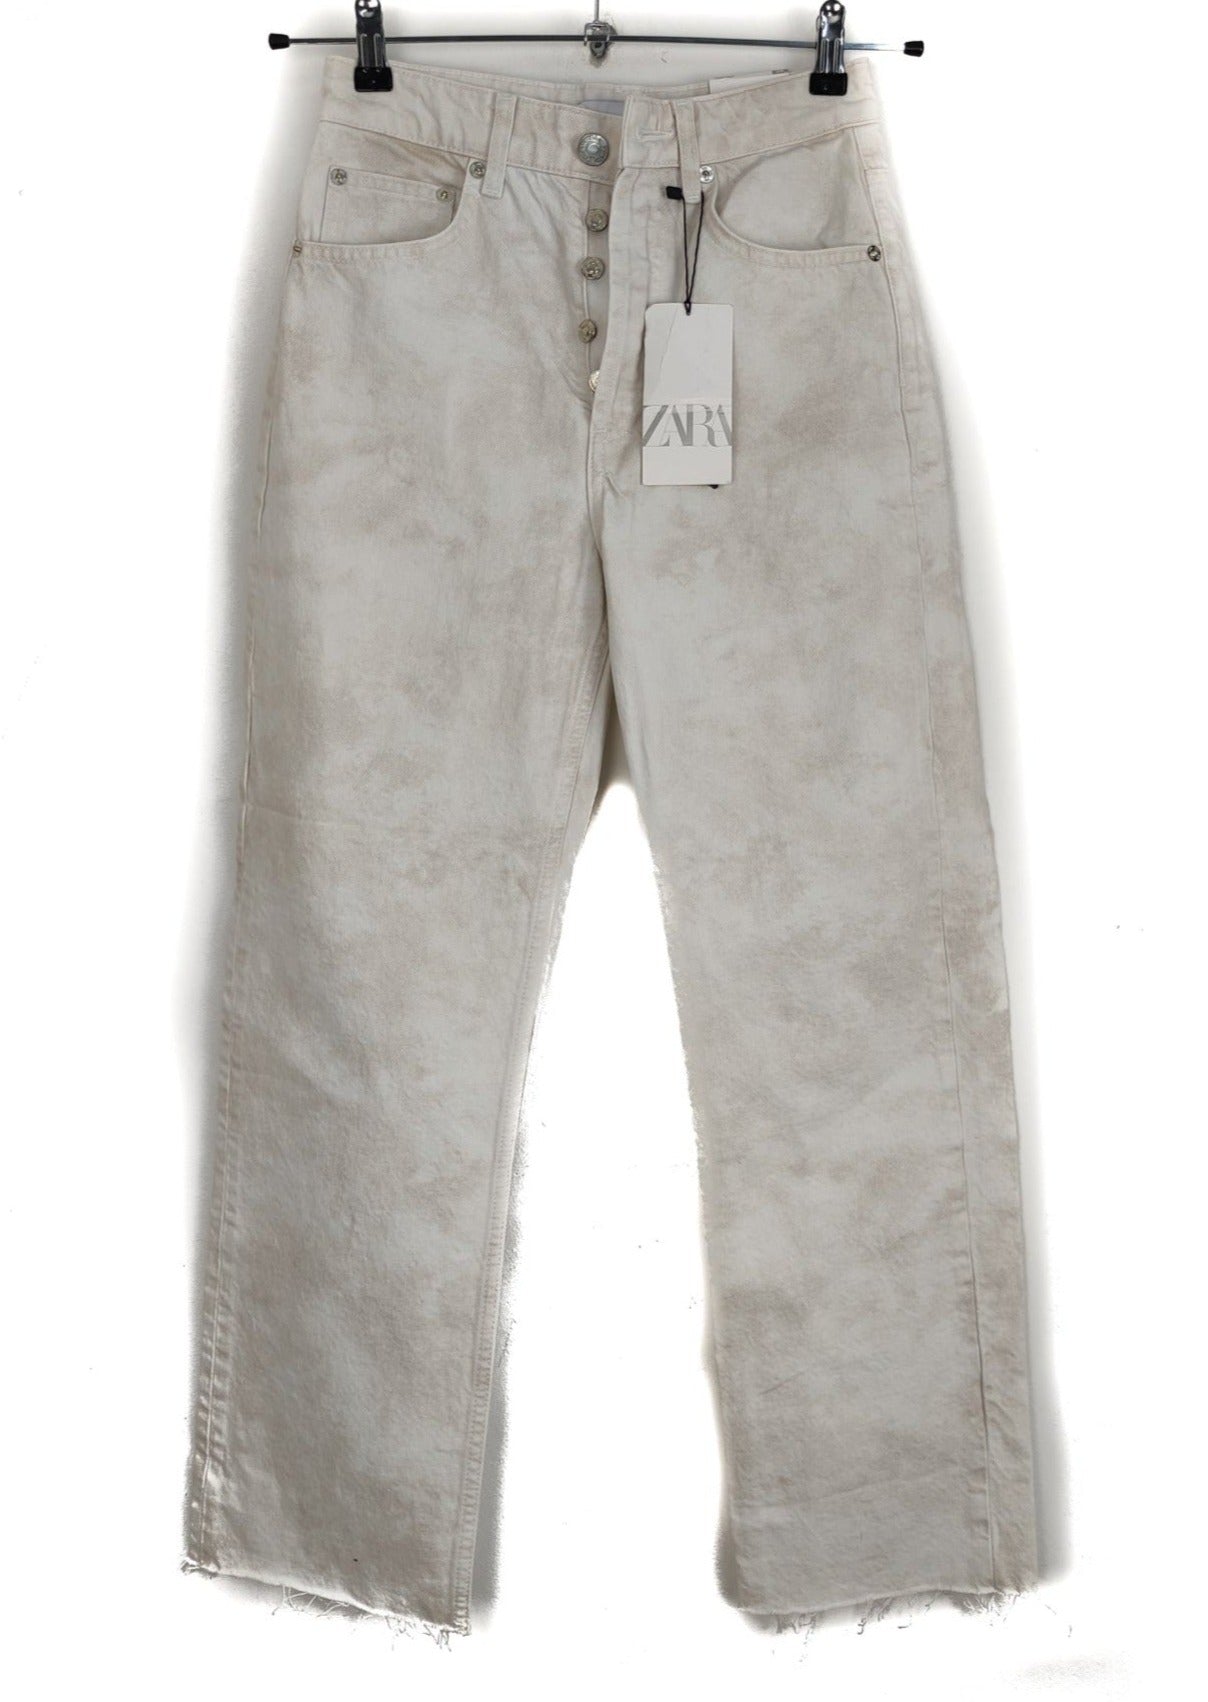 Stock Γυναικείο Tζιν Παντελόνι ZARA σε Λευκό Χρώμα (XS)